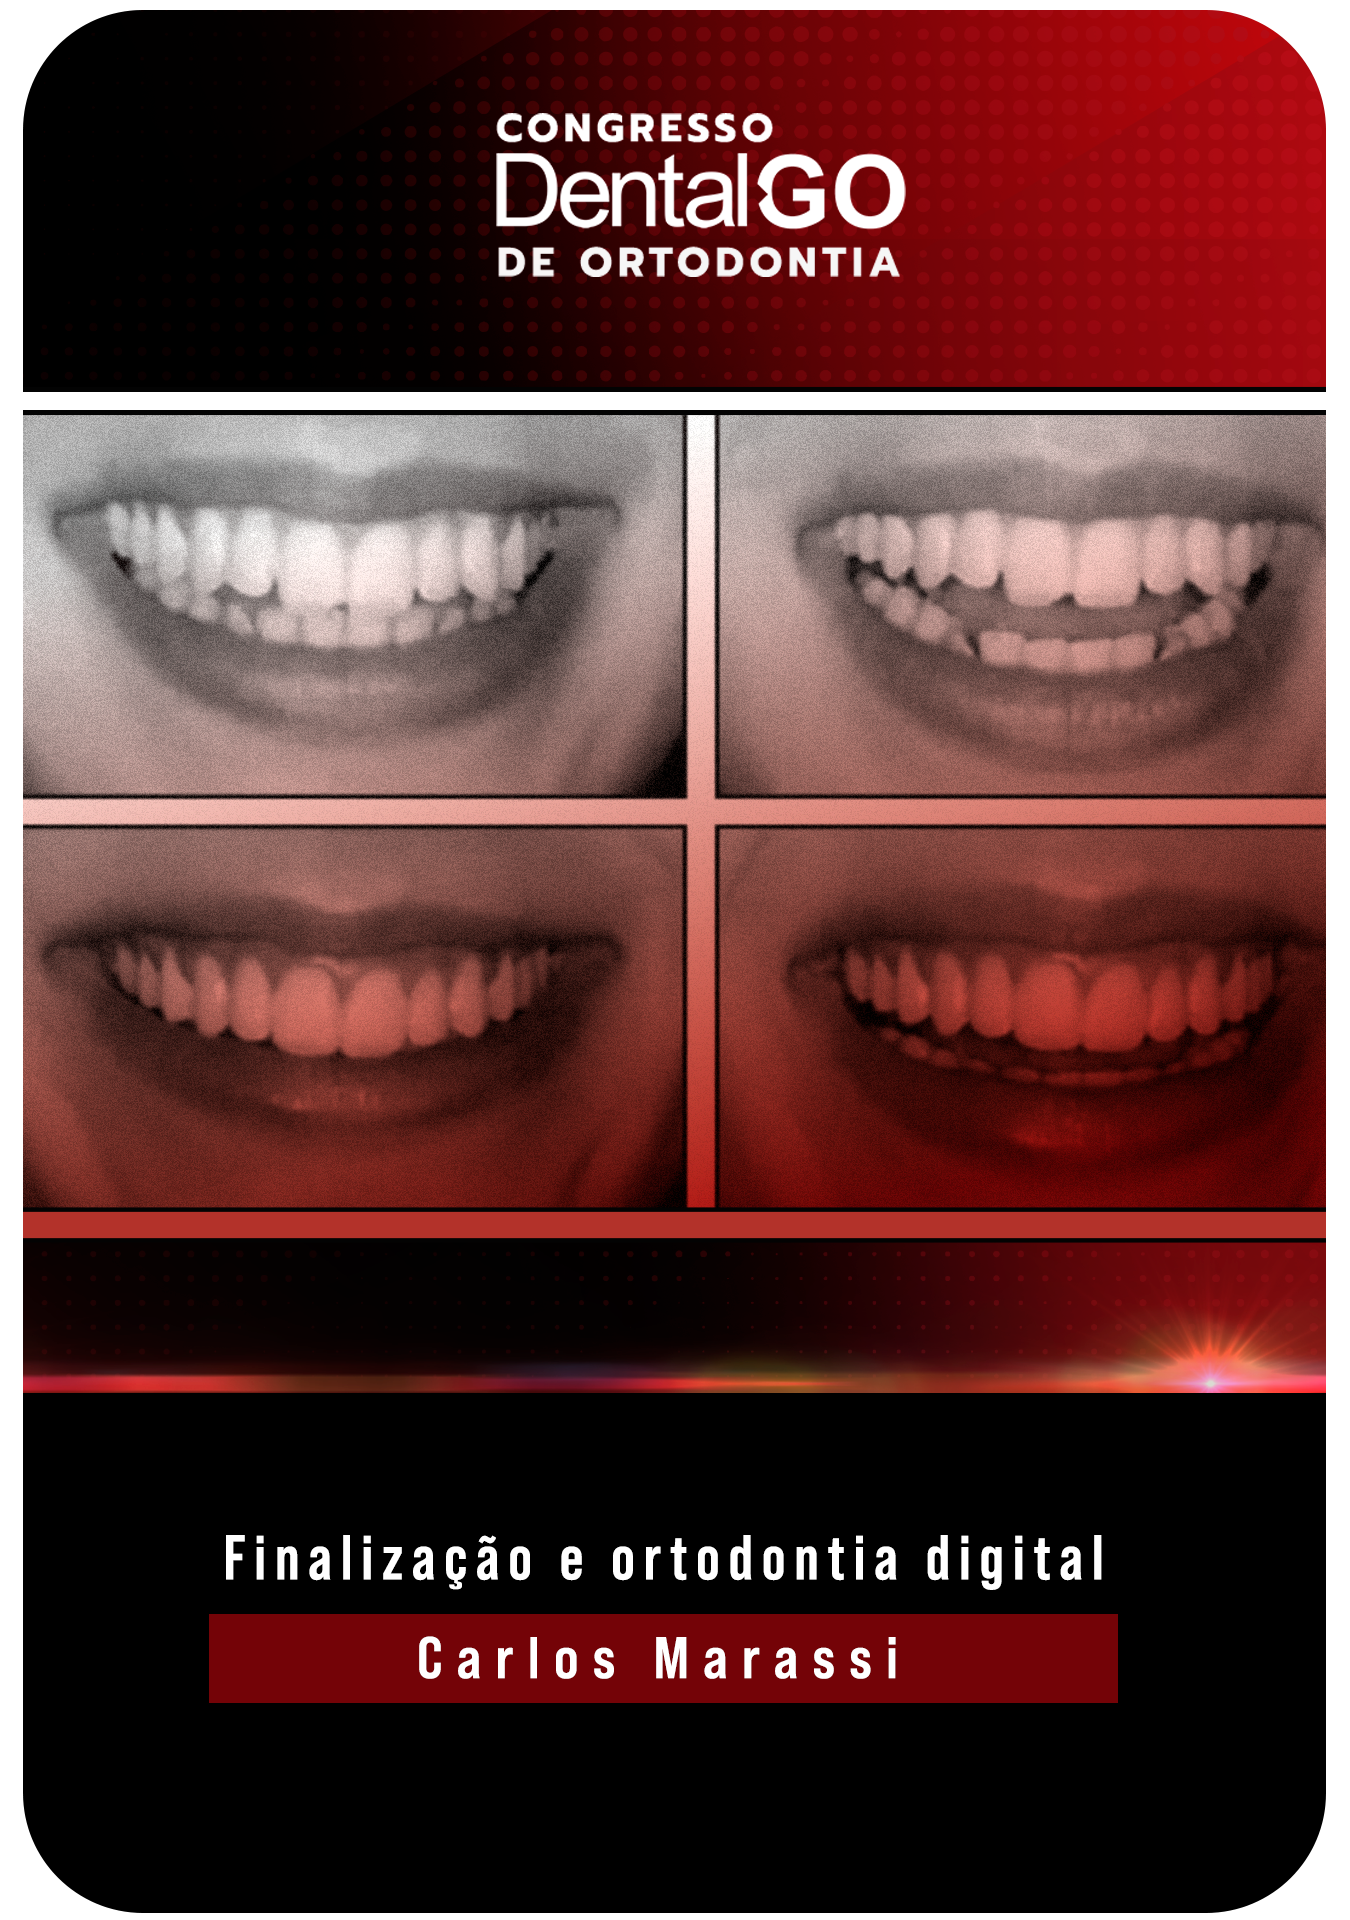 Carlo Marassi - Finalização e ortodontia digital